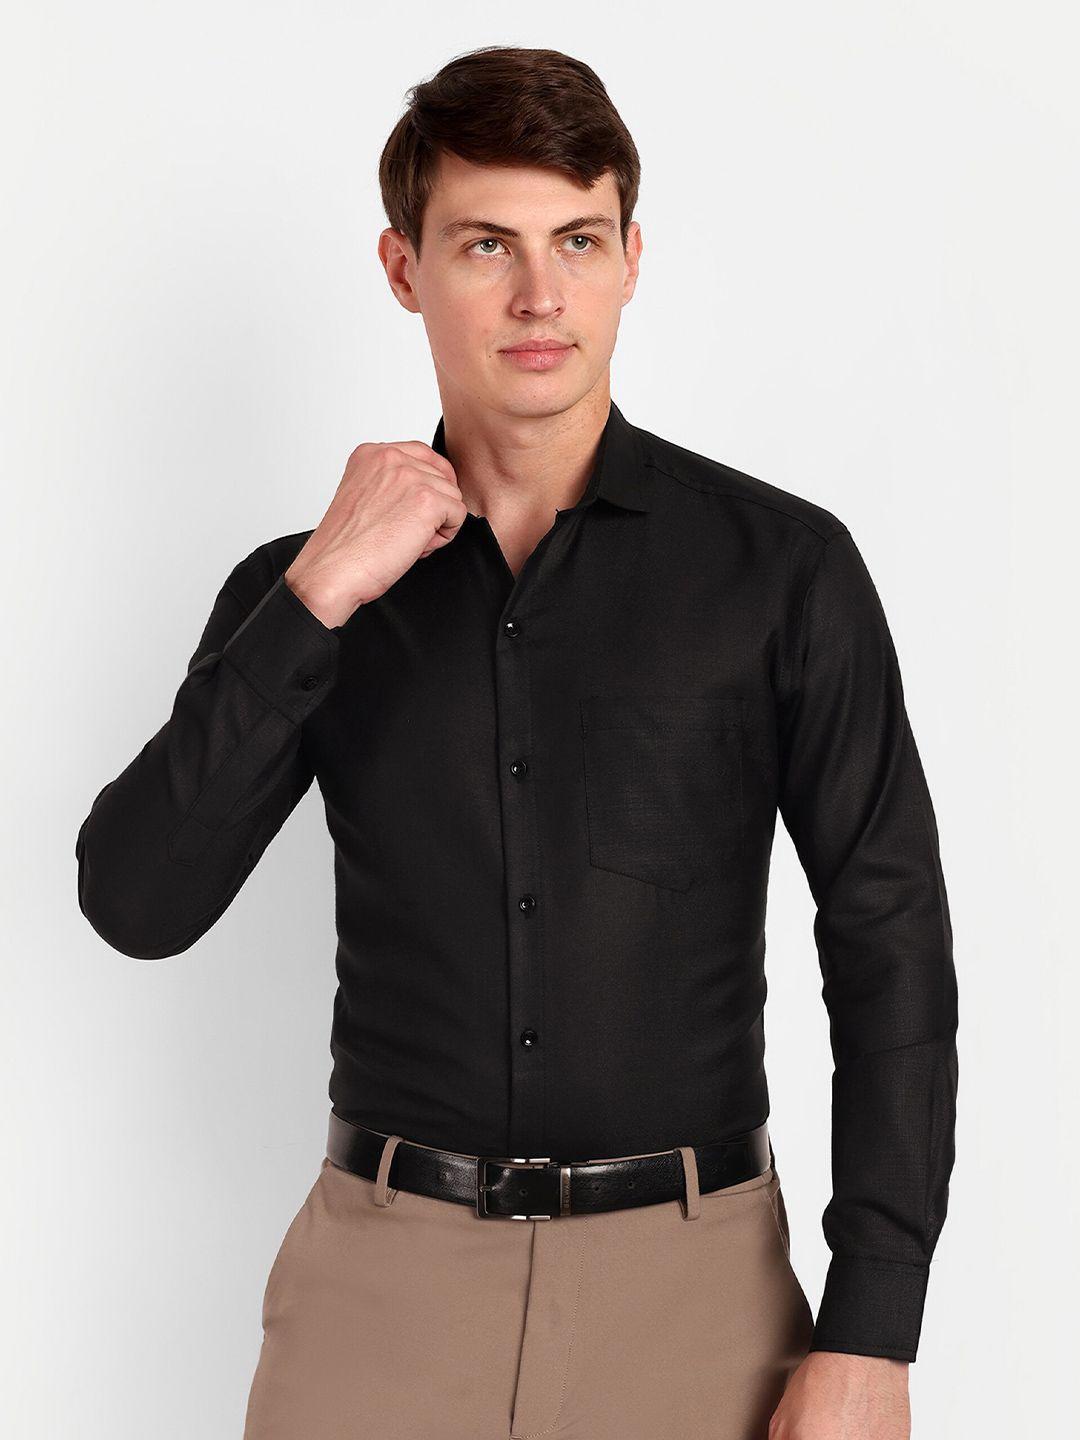 colorwings men black comfort semi sheer formal shirt